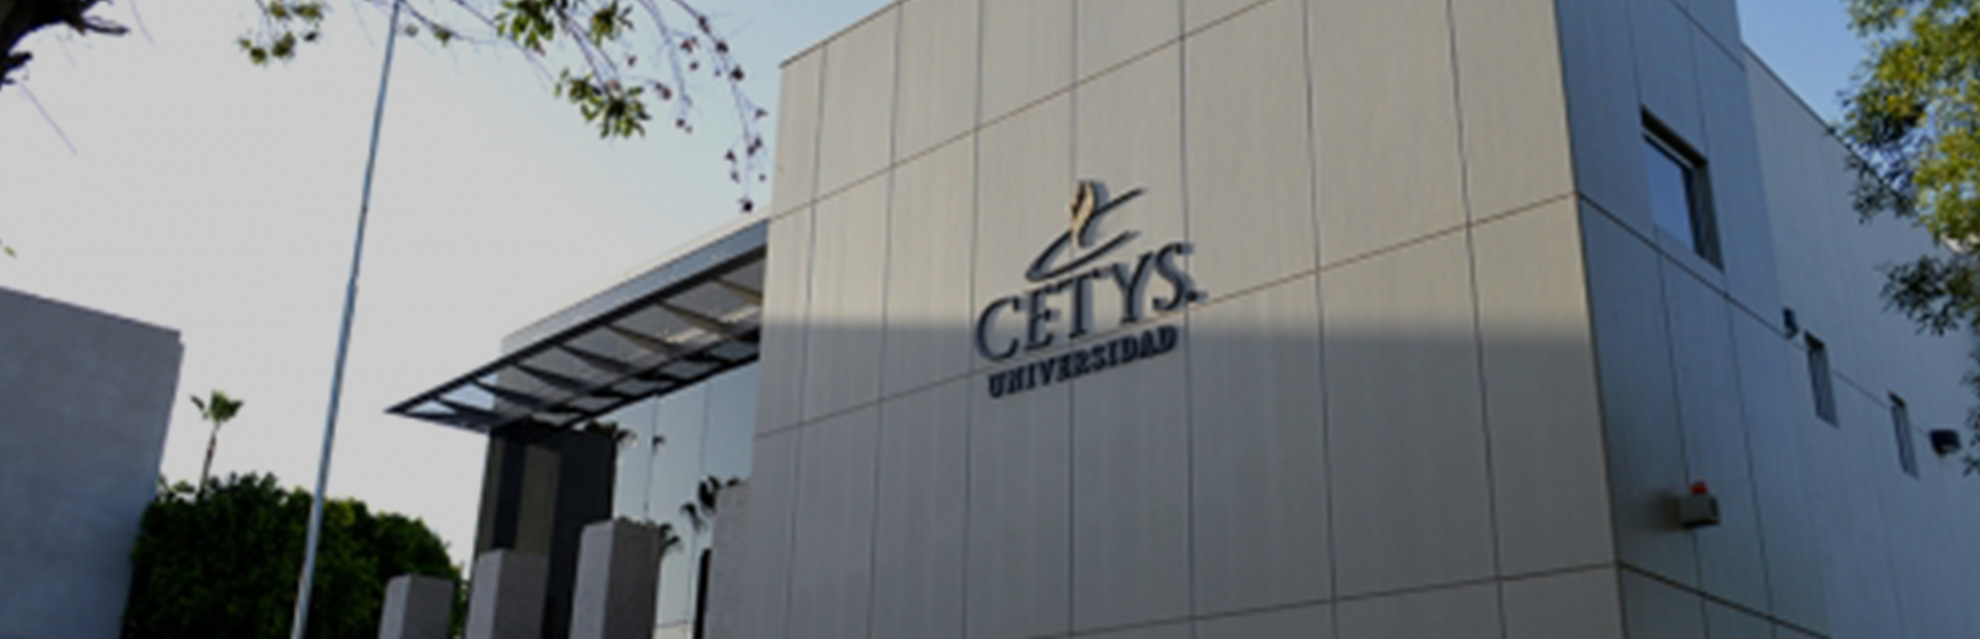 Cetys Universidad Mexicali